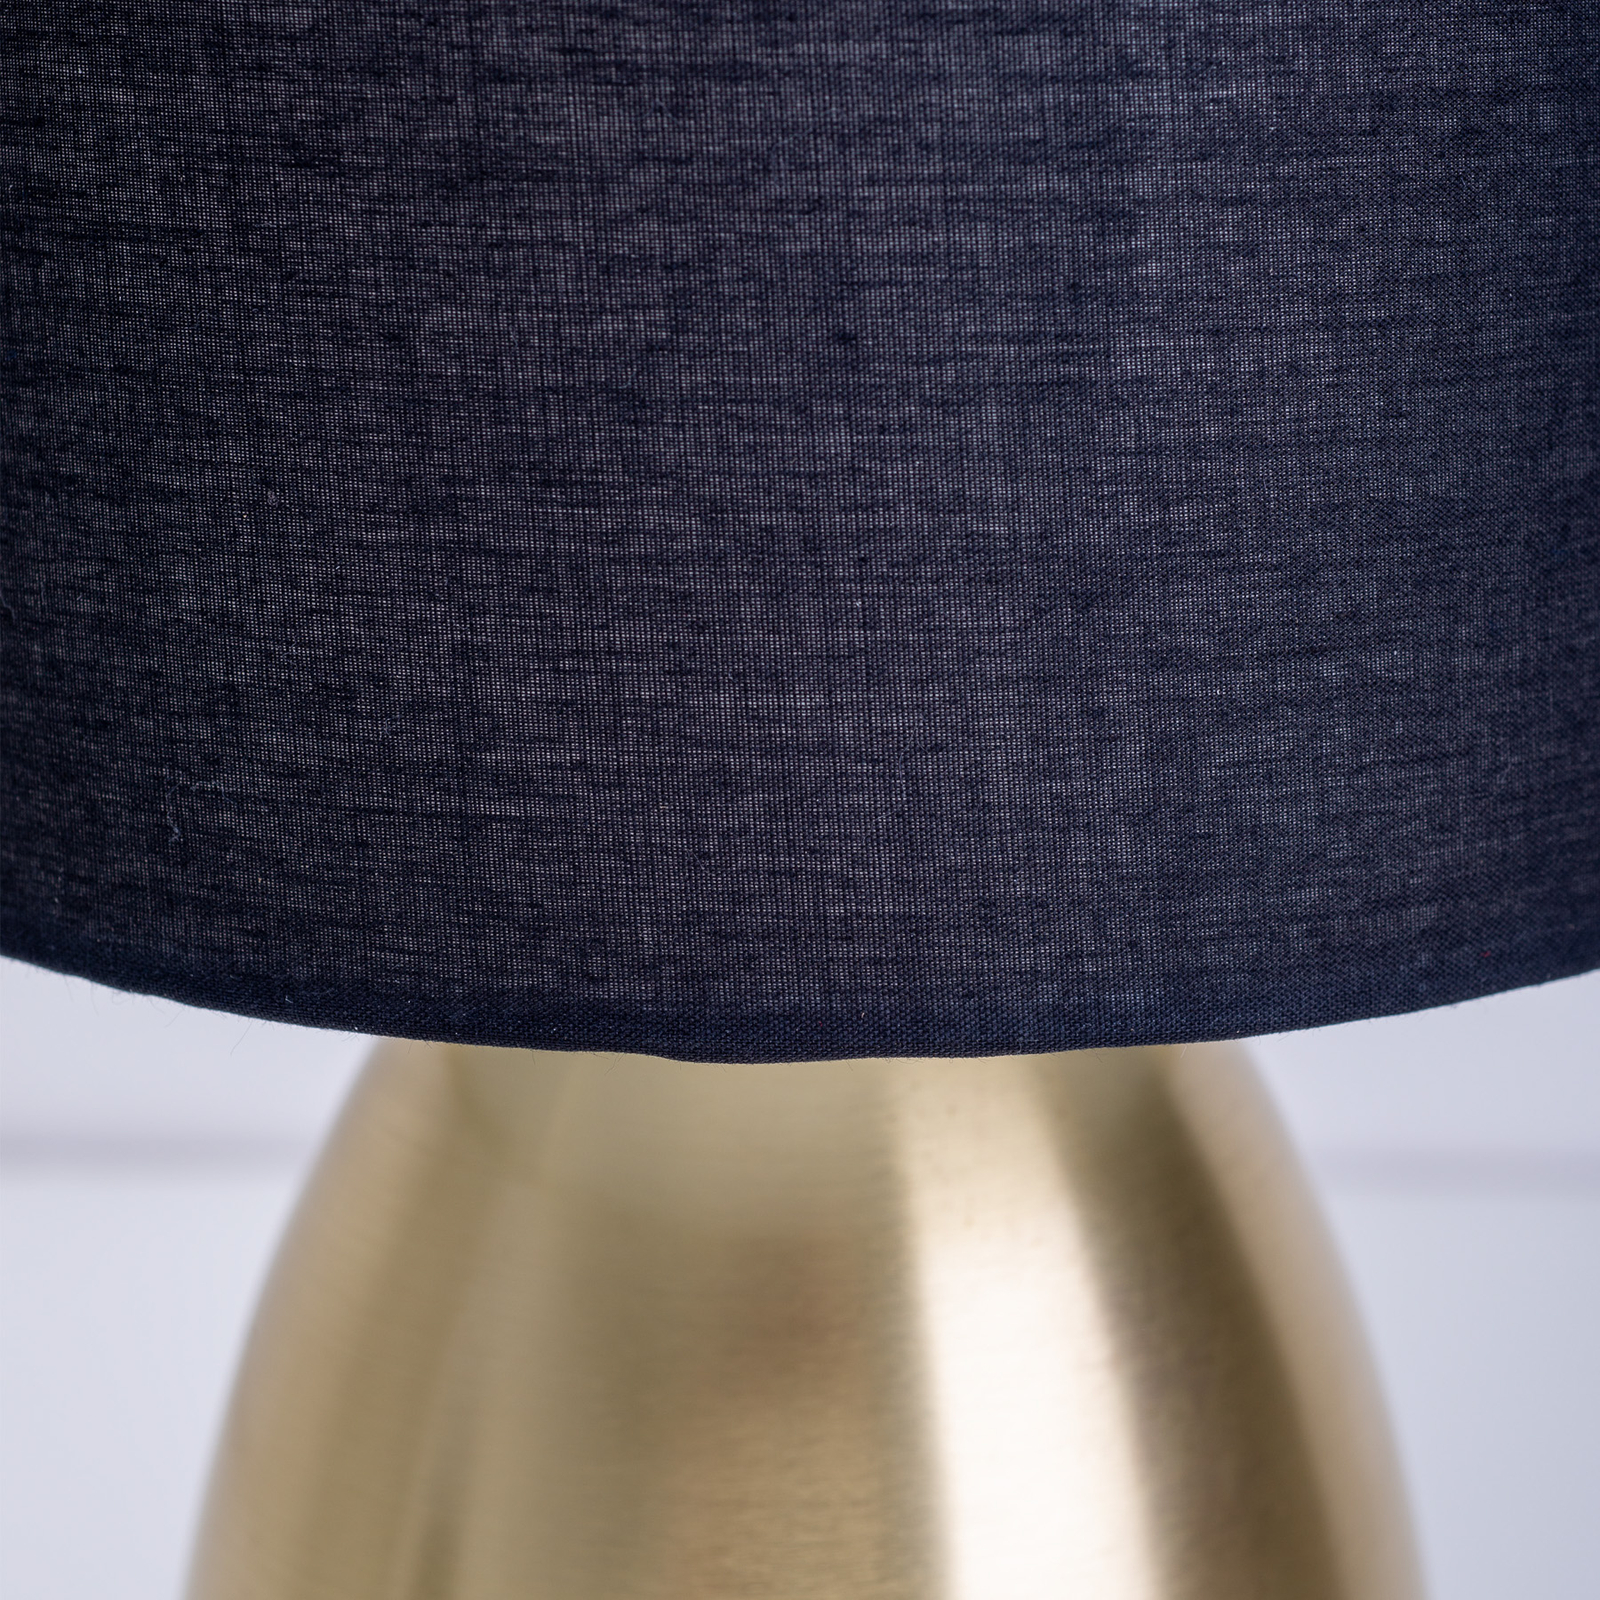 Επιτραπέζιο φωτιστικό Aurum, υφασμάτινο κάλυμμα, μαύρο/χρυσό